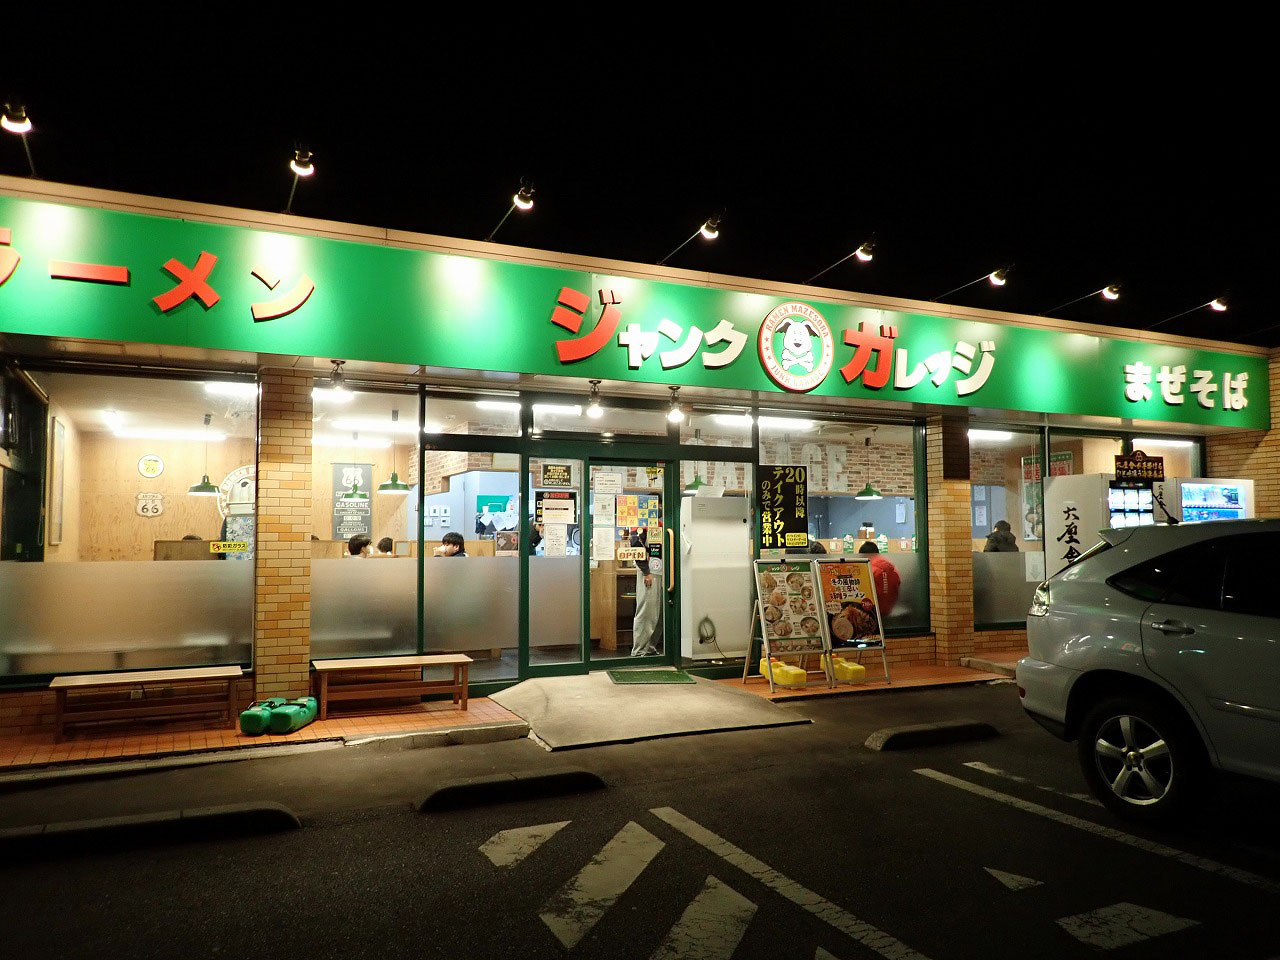 ラーメン店の前にラーメンの自動販売機があるのです。場所は東武東上線・霞ヶ関駅から徒歩約20分